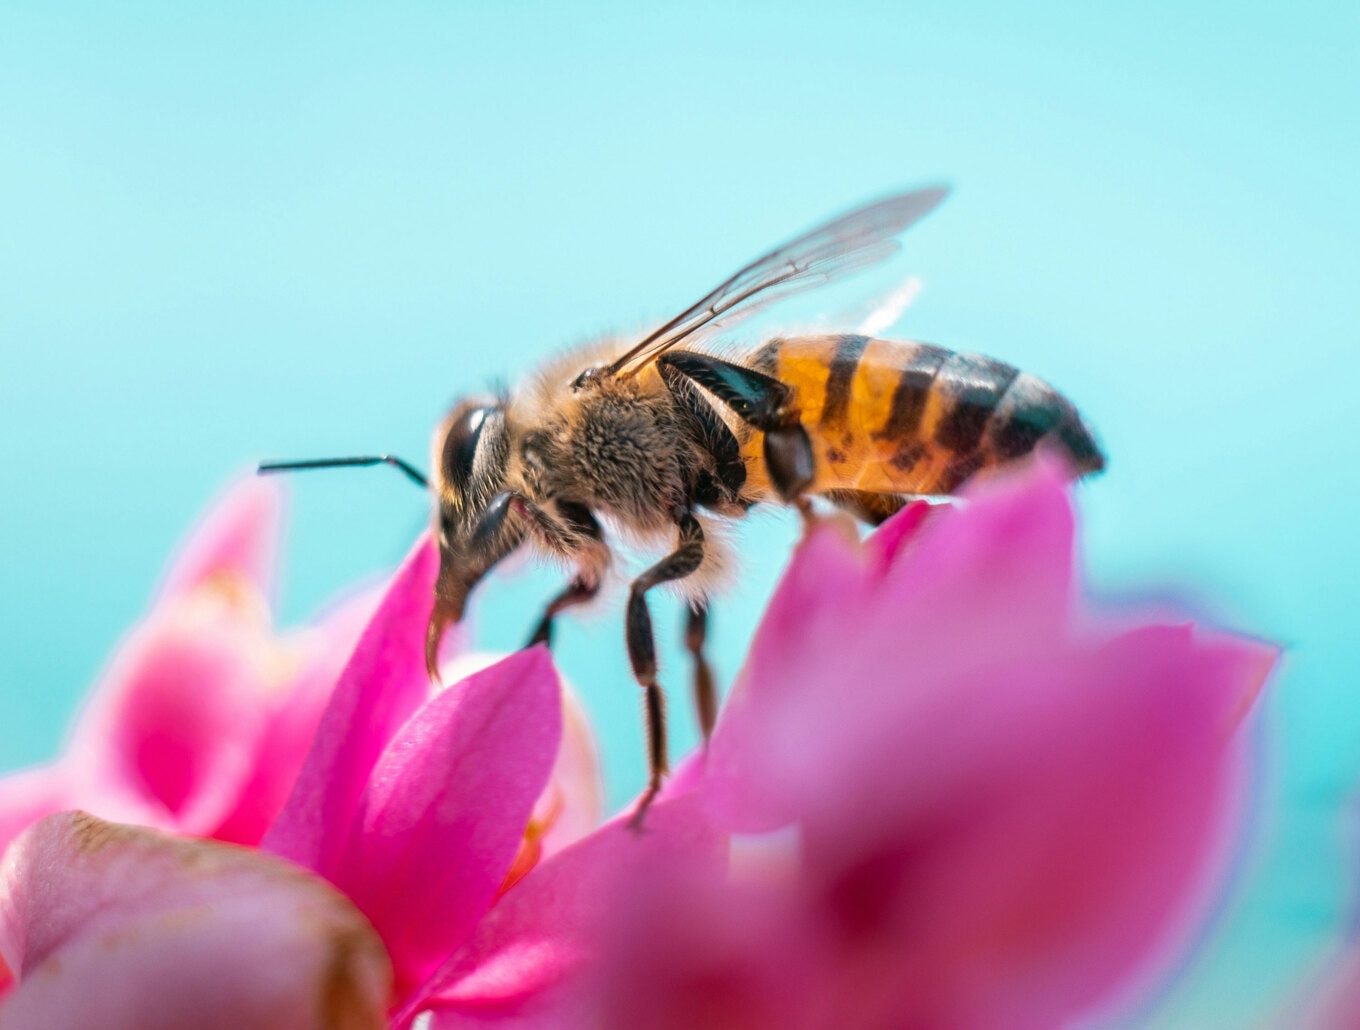 VegNews.Bee.ArusflyUnsplash